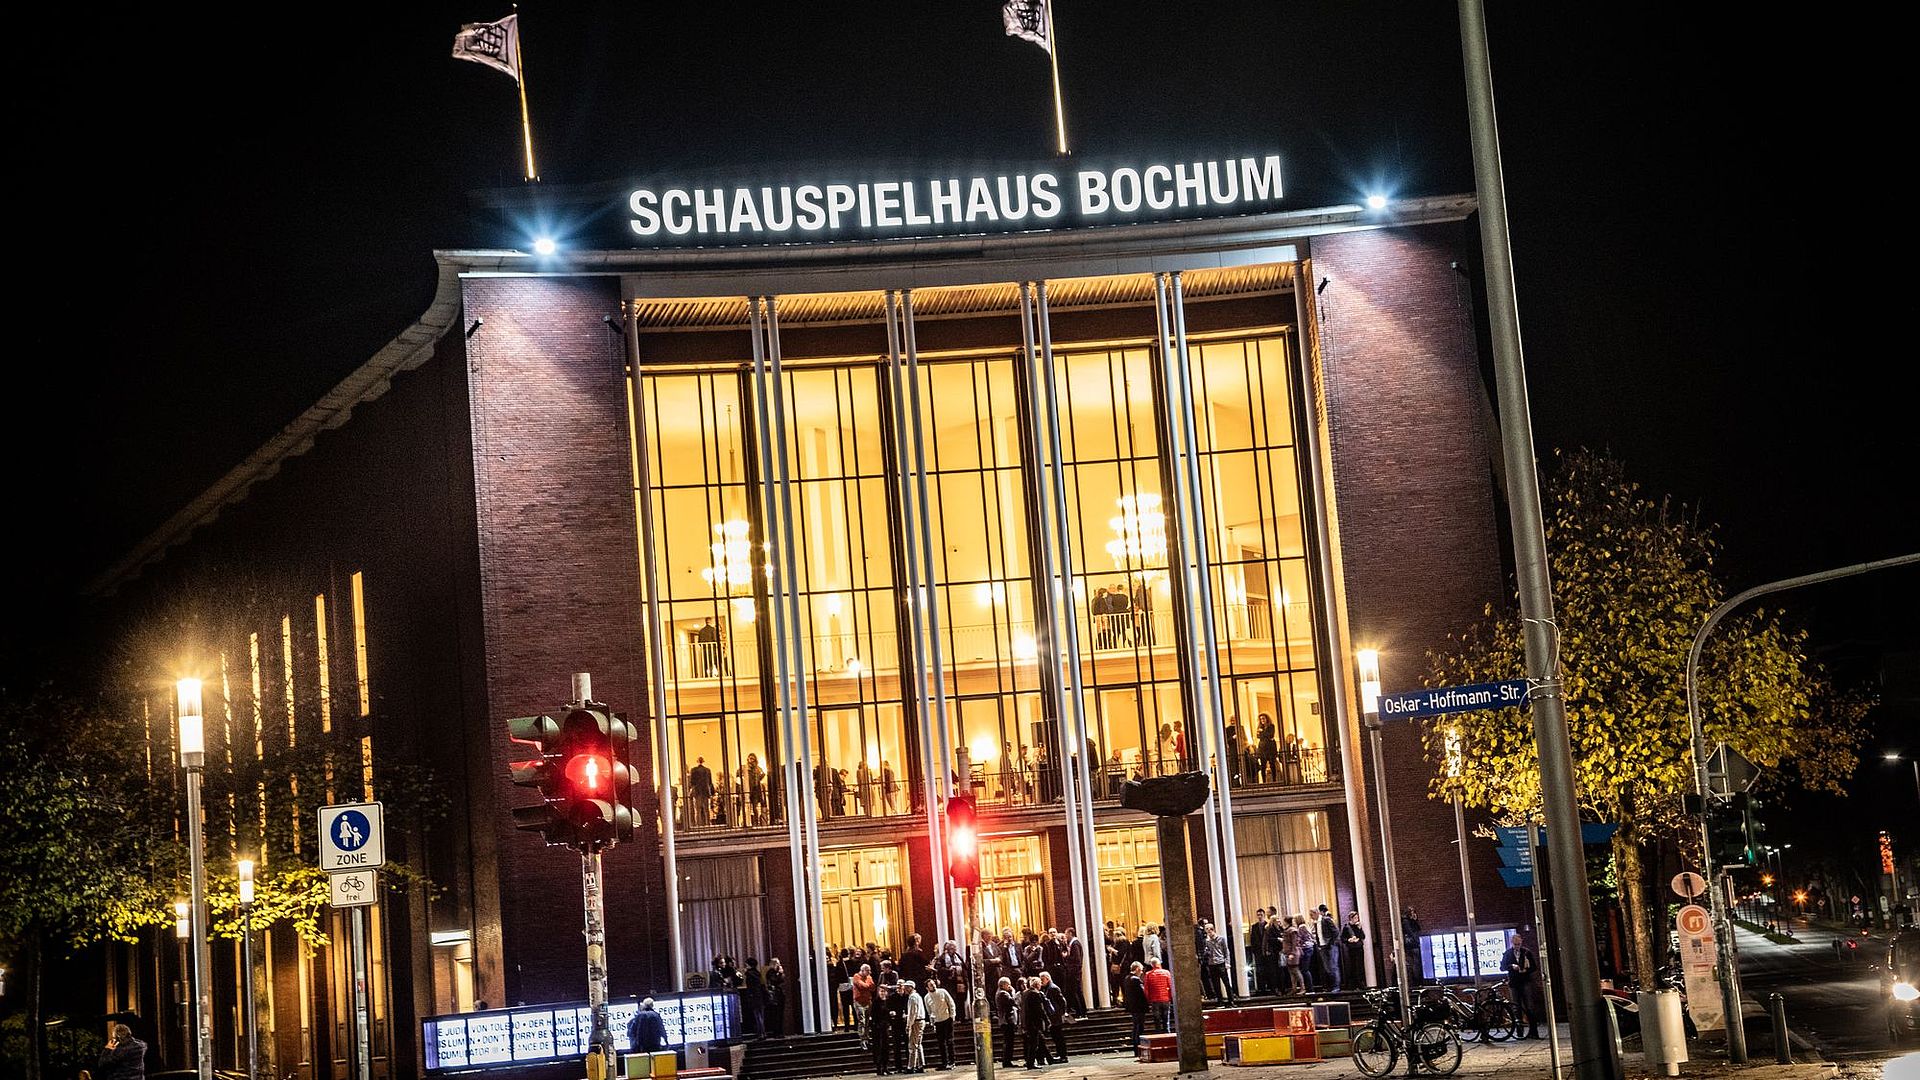 Das Schauspielhaus Bochum lebendig mit Besuchern und Lichtern